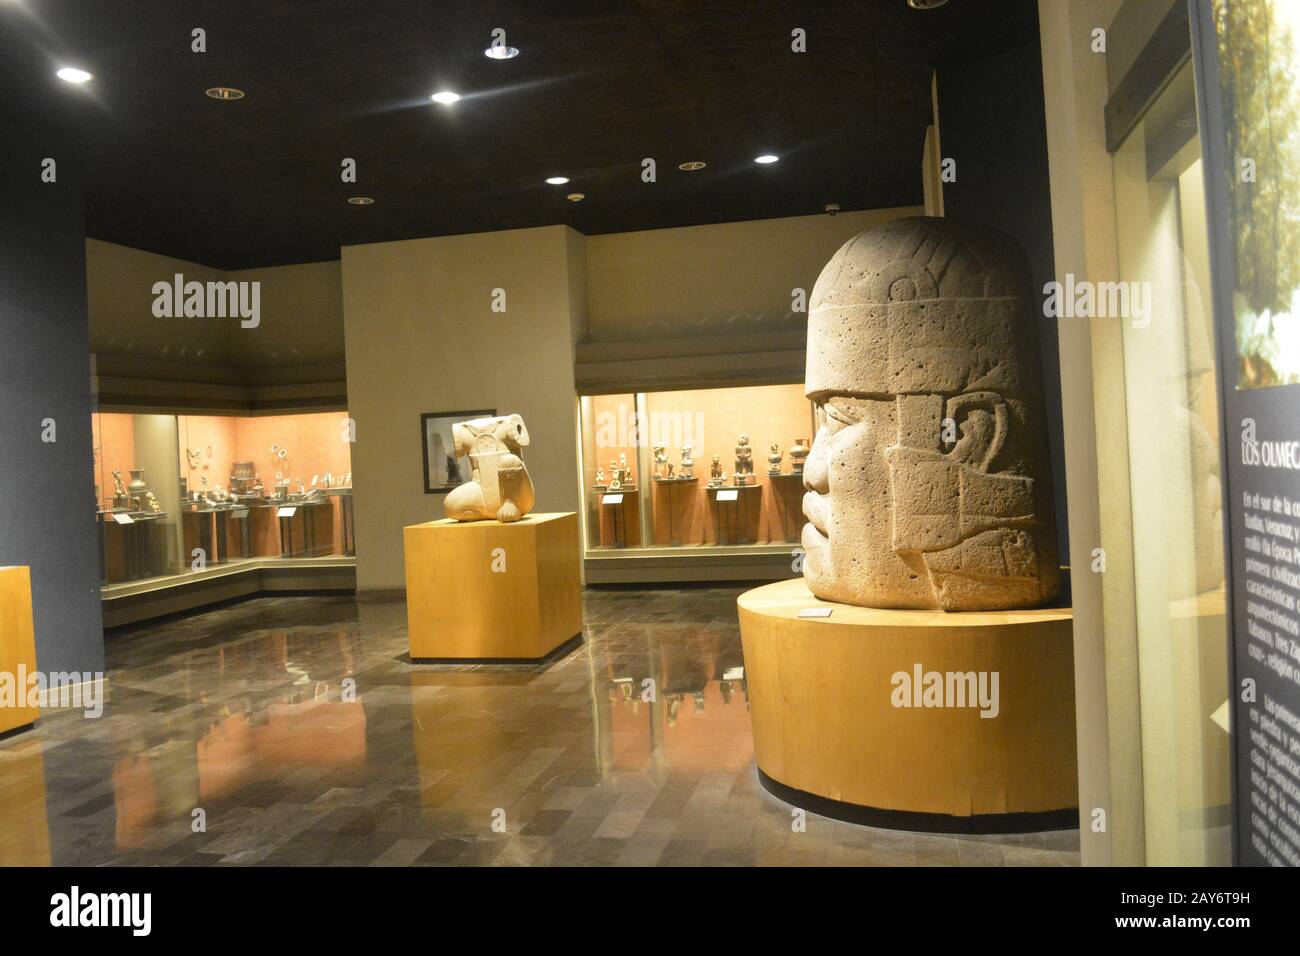 La tête d'Olmec regardant l'homme tête d'Olmec s'agenouiller de San Lorenzo. Vue depuis la salle Olmec du Musée national d'anthropologie de Mexico Banque D'Images